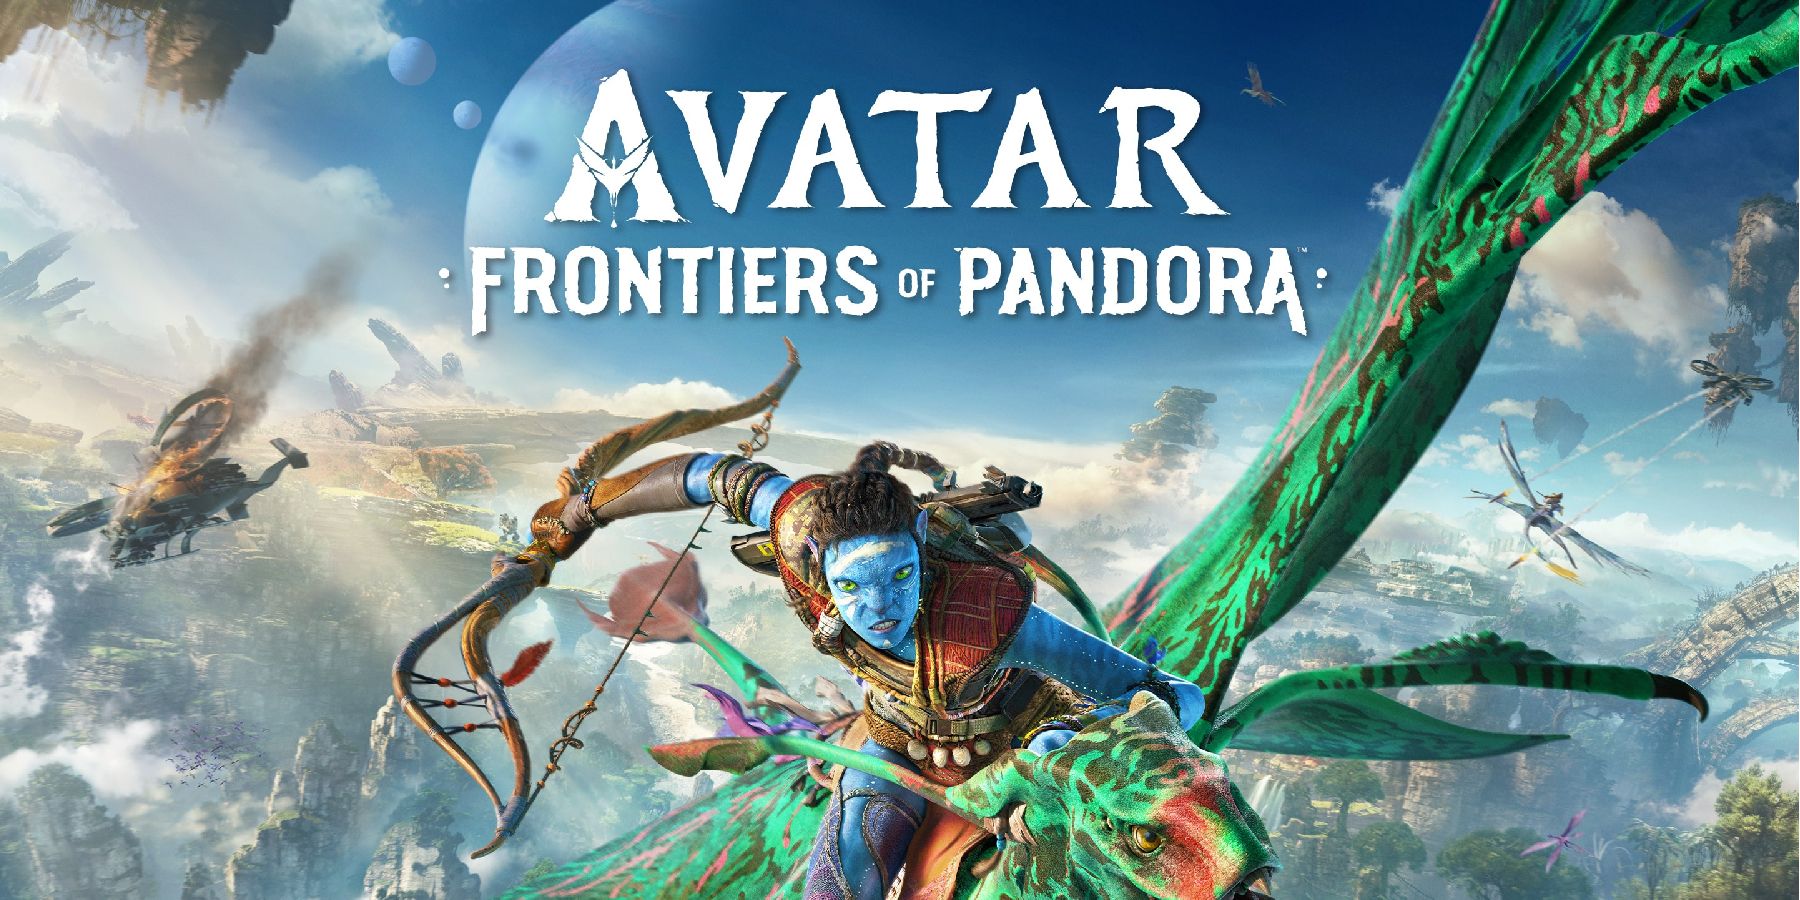 Título Avatar Fronteiras de Pandora